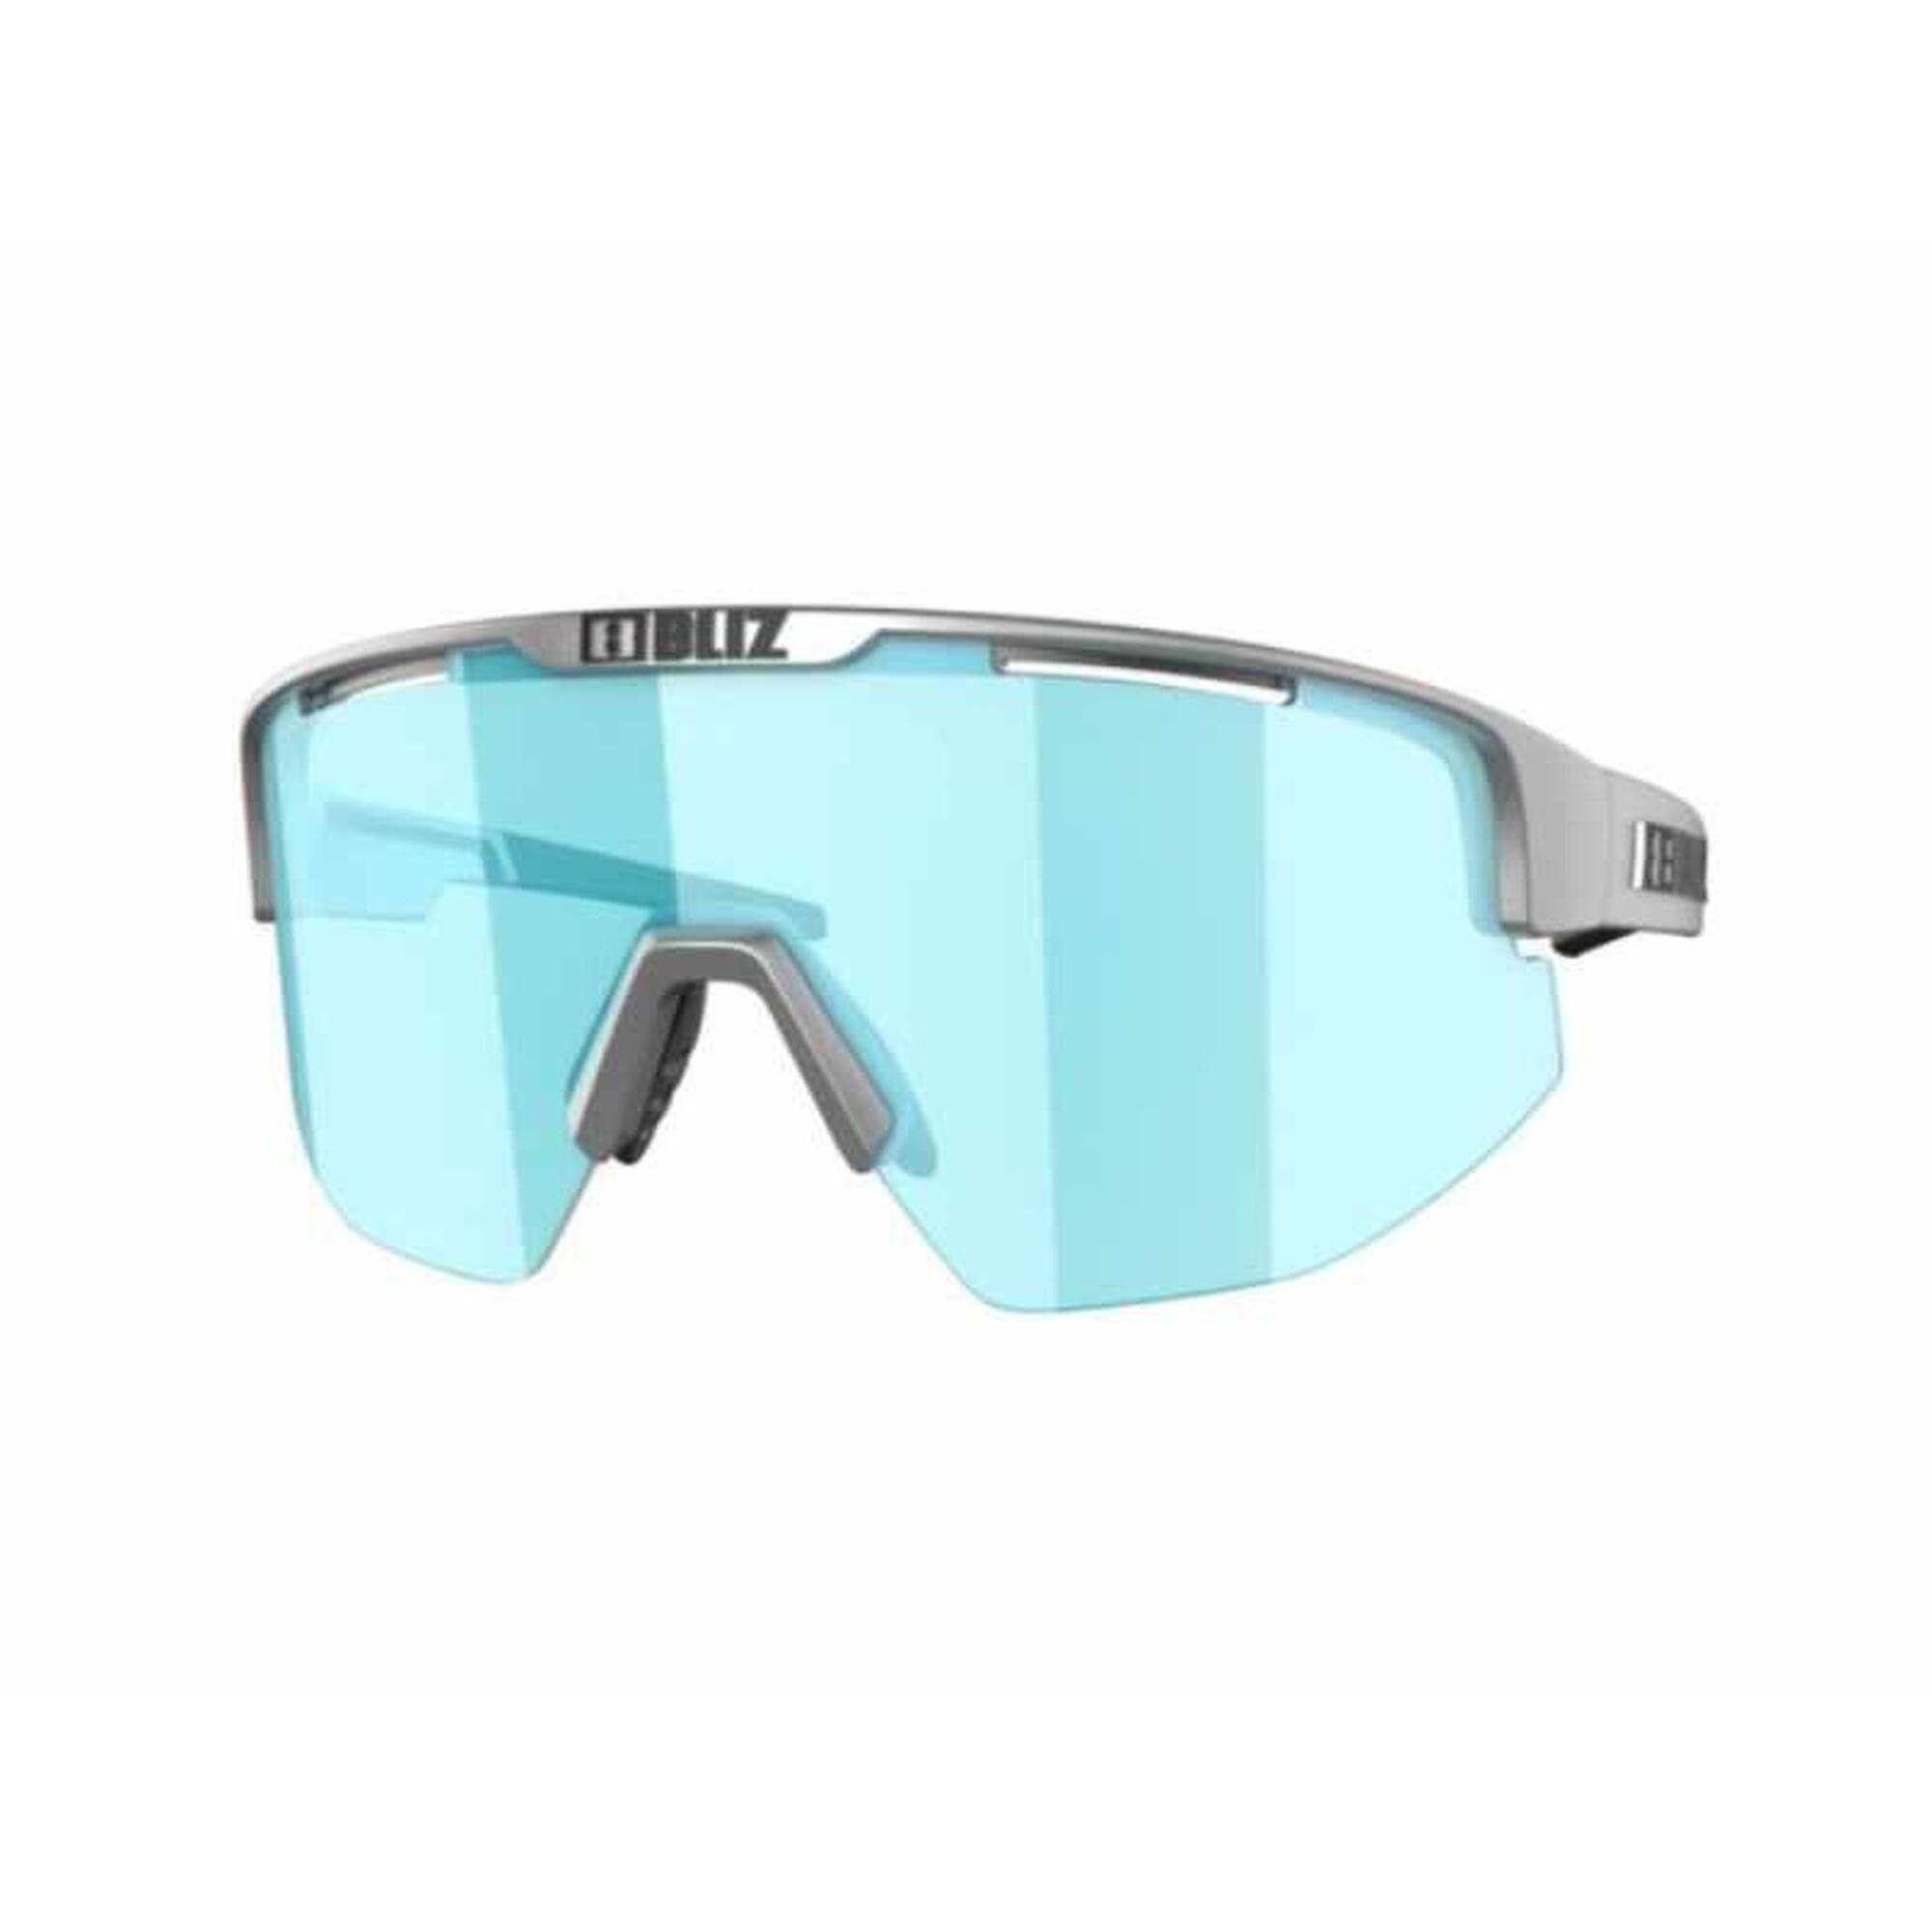 Okulary Bliz przeciwsłoneczne Active Matrix Silver Metallic